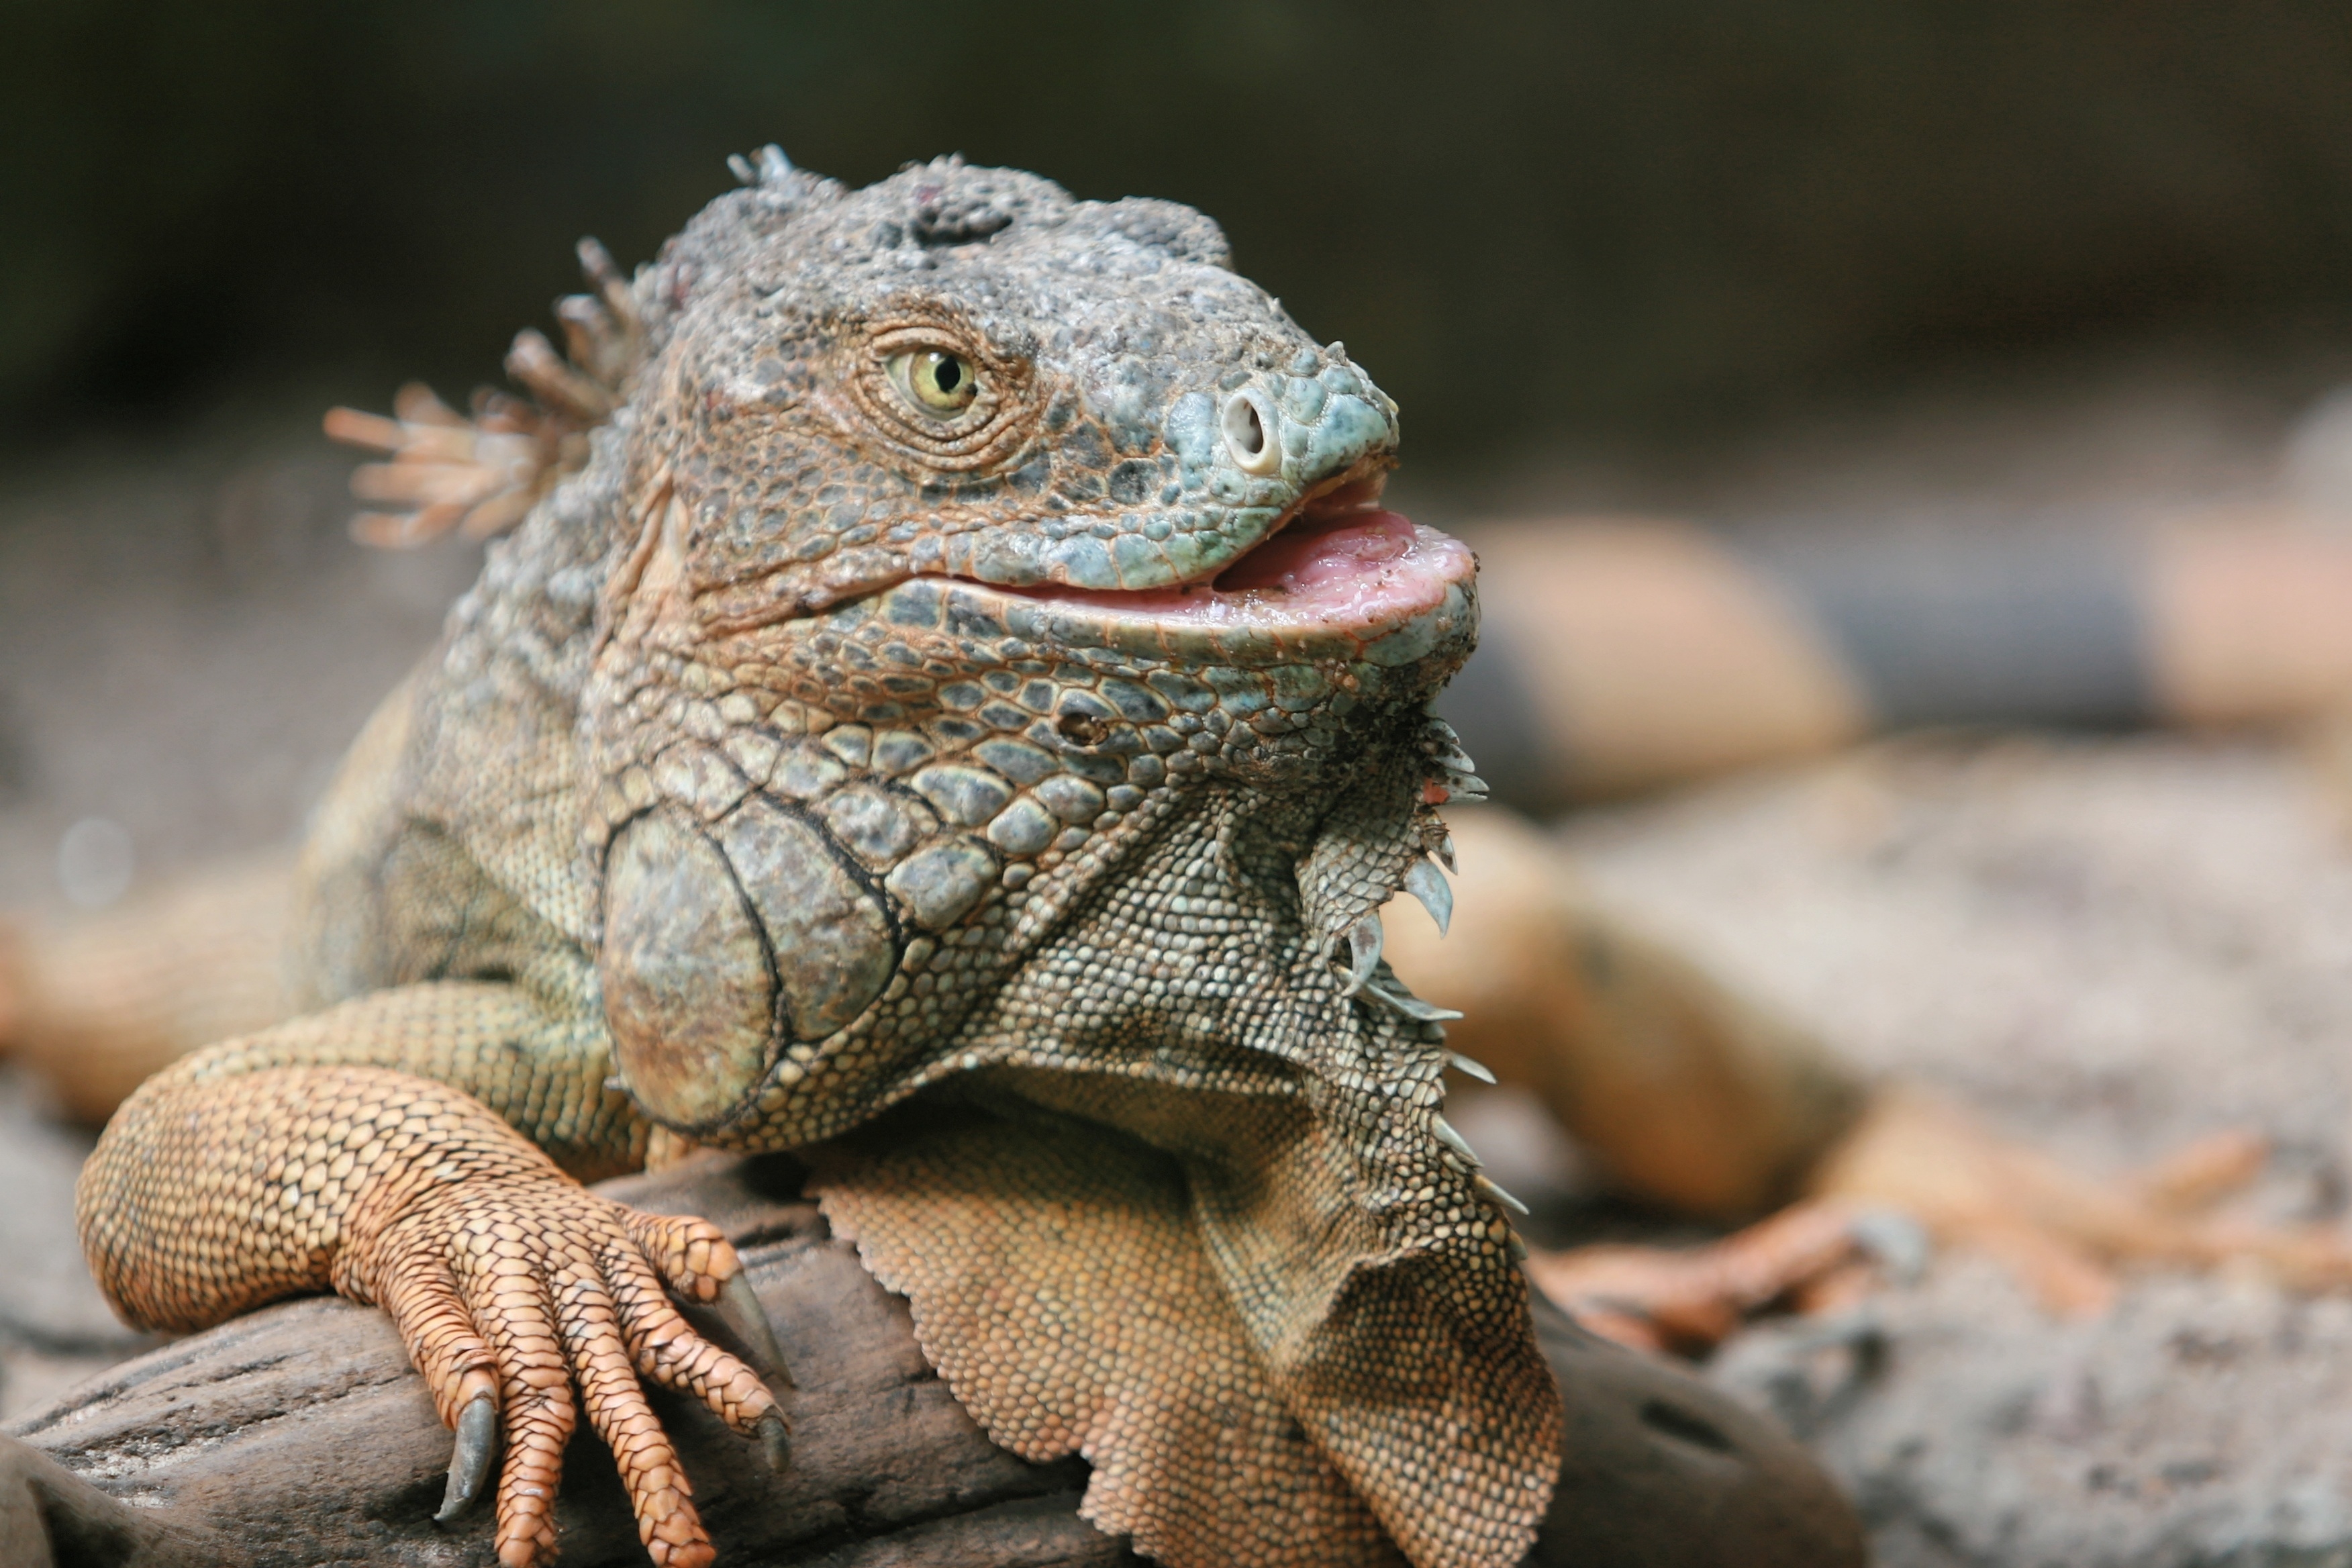 Close-up of an iguana